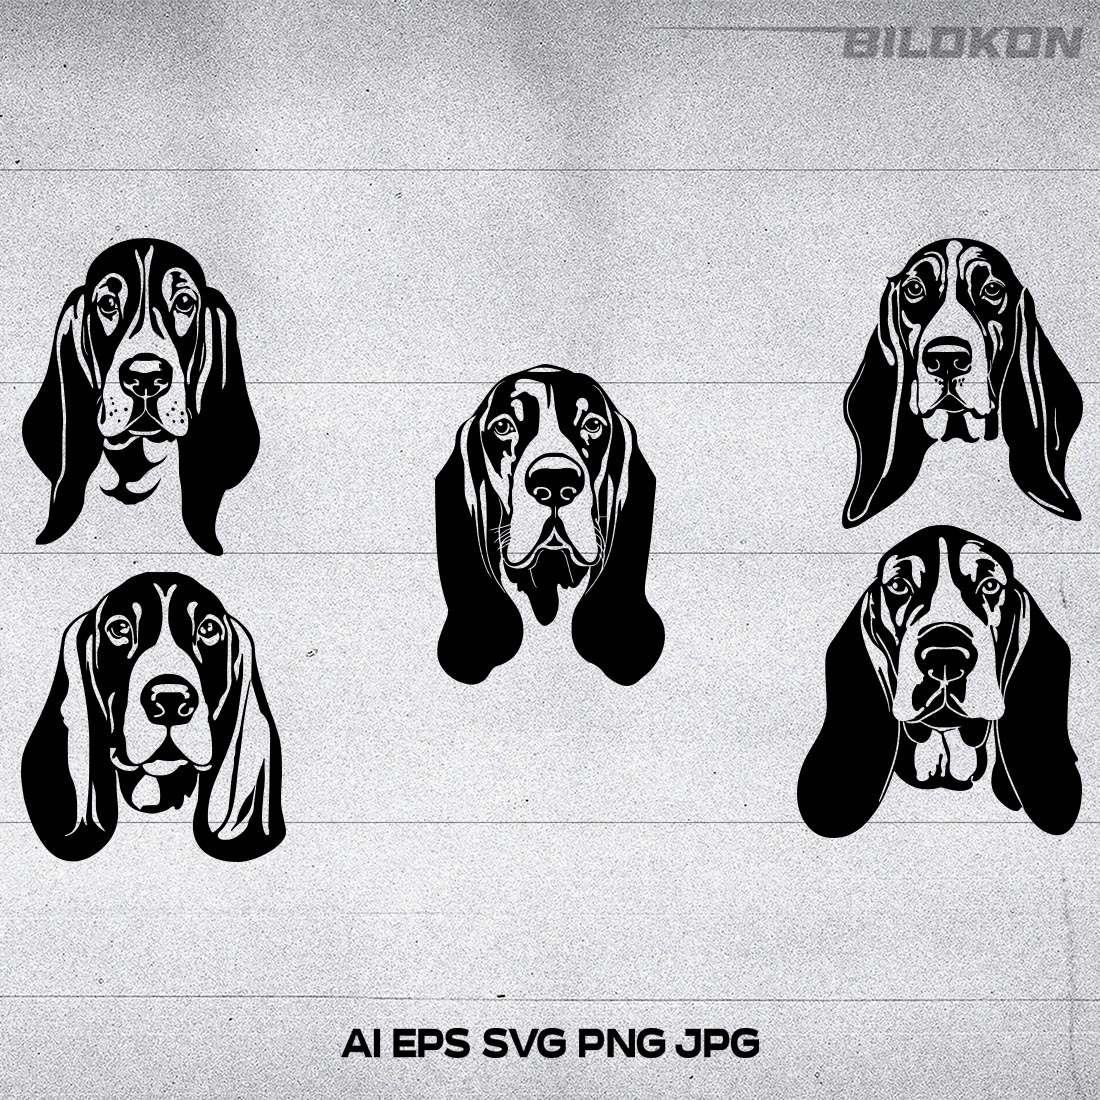 Basset hound dog head, SVG, Vector, Illustration, SVG Bundle cover image.